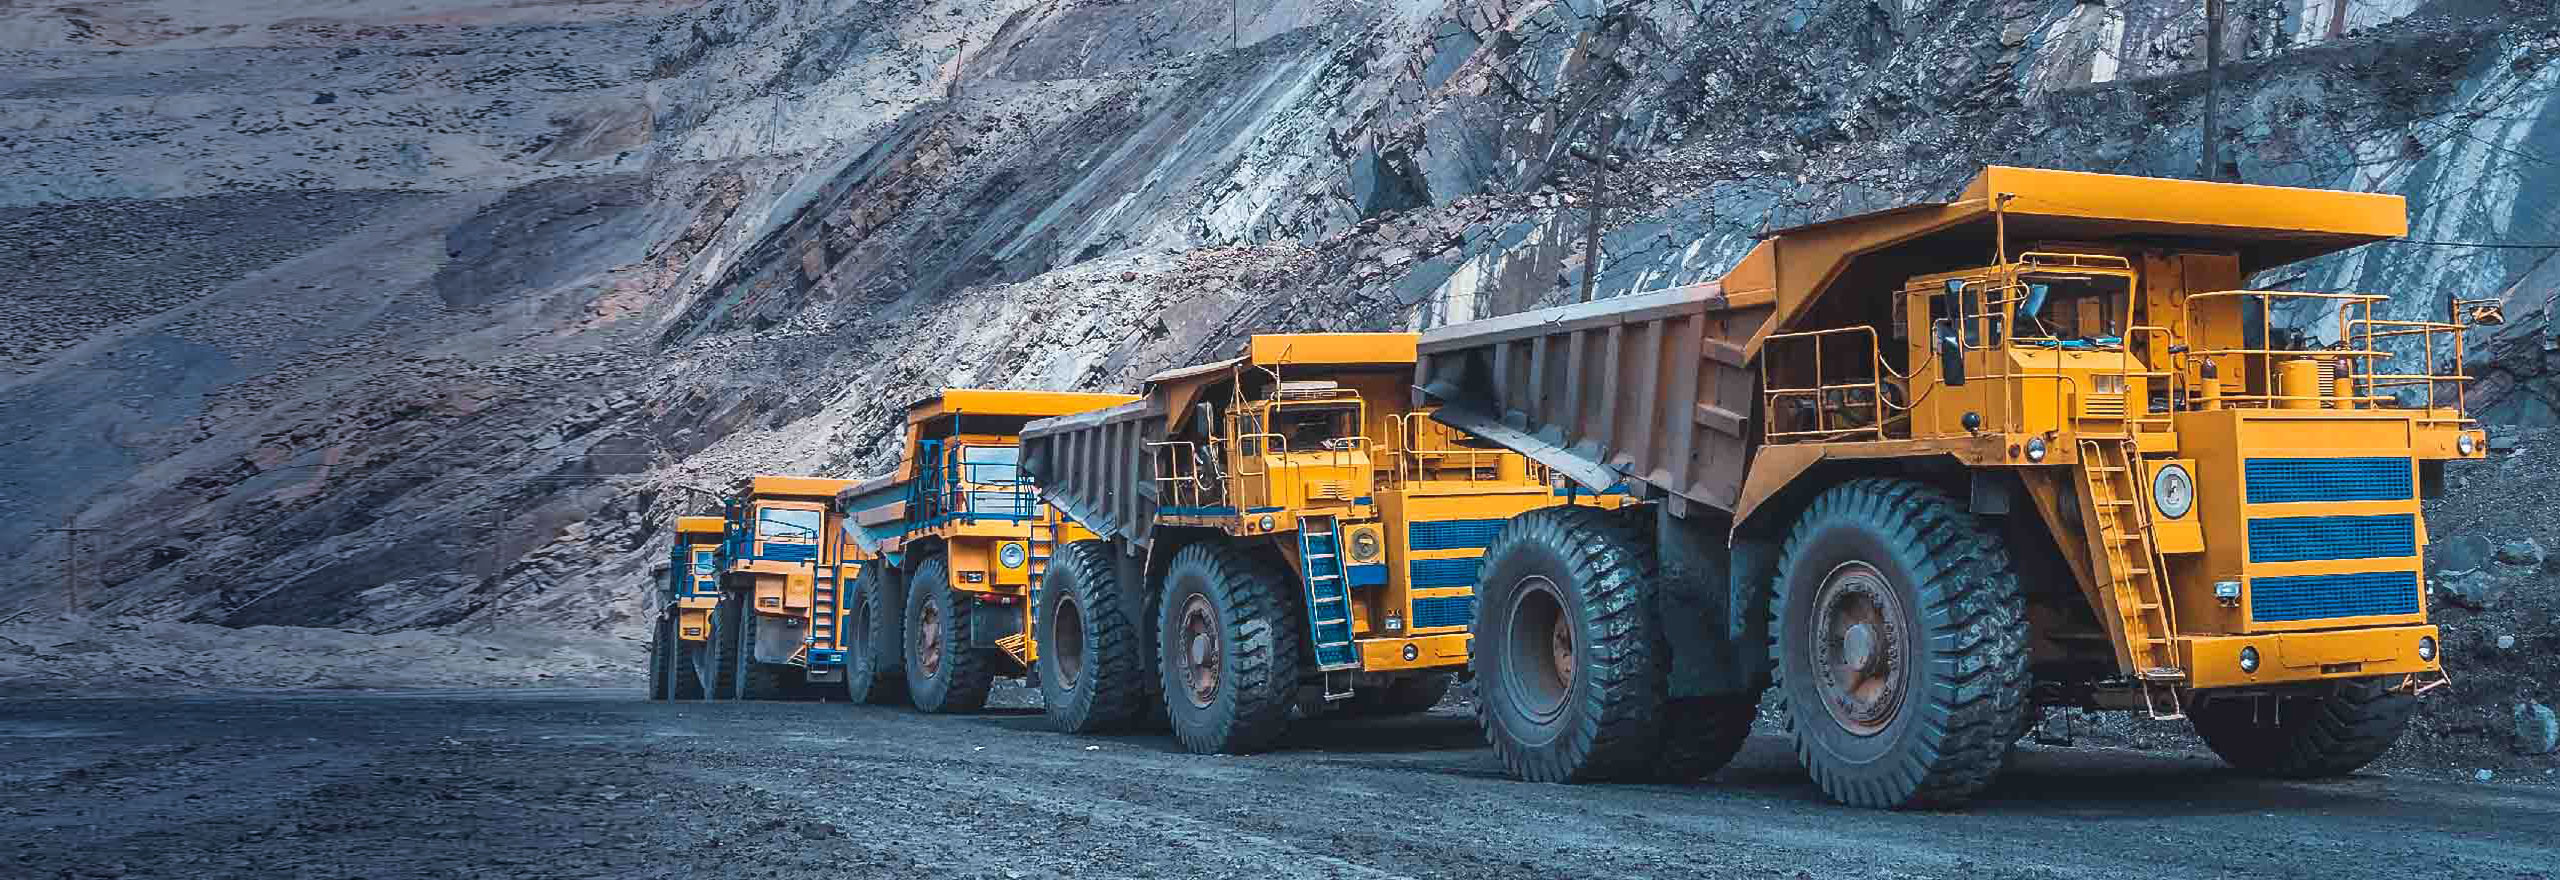 caminhões de transporte dirigindo em uma estrada de mineração